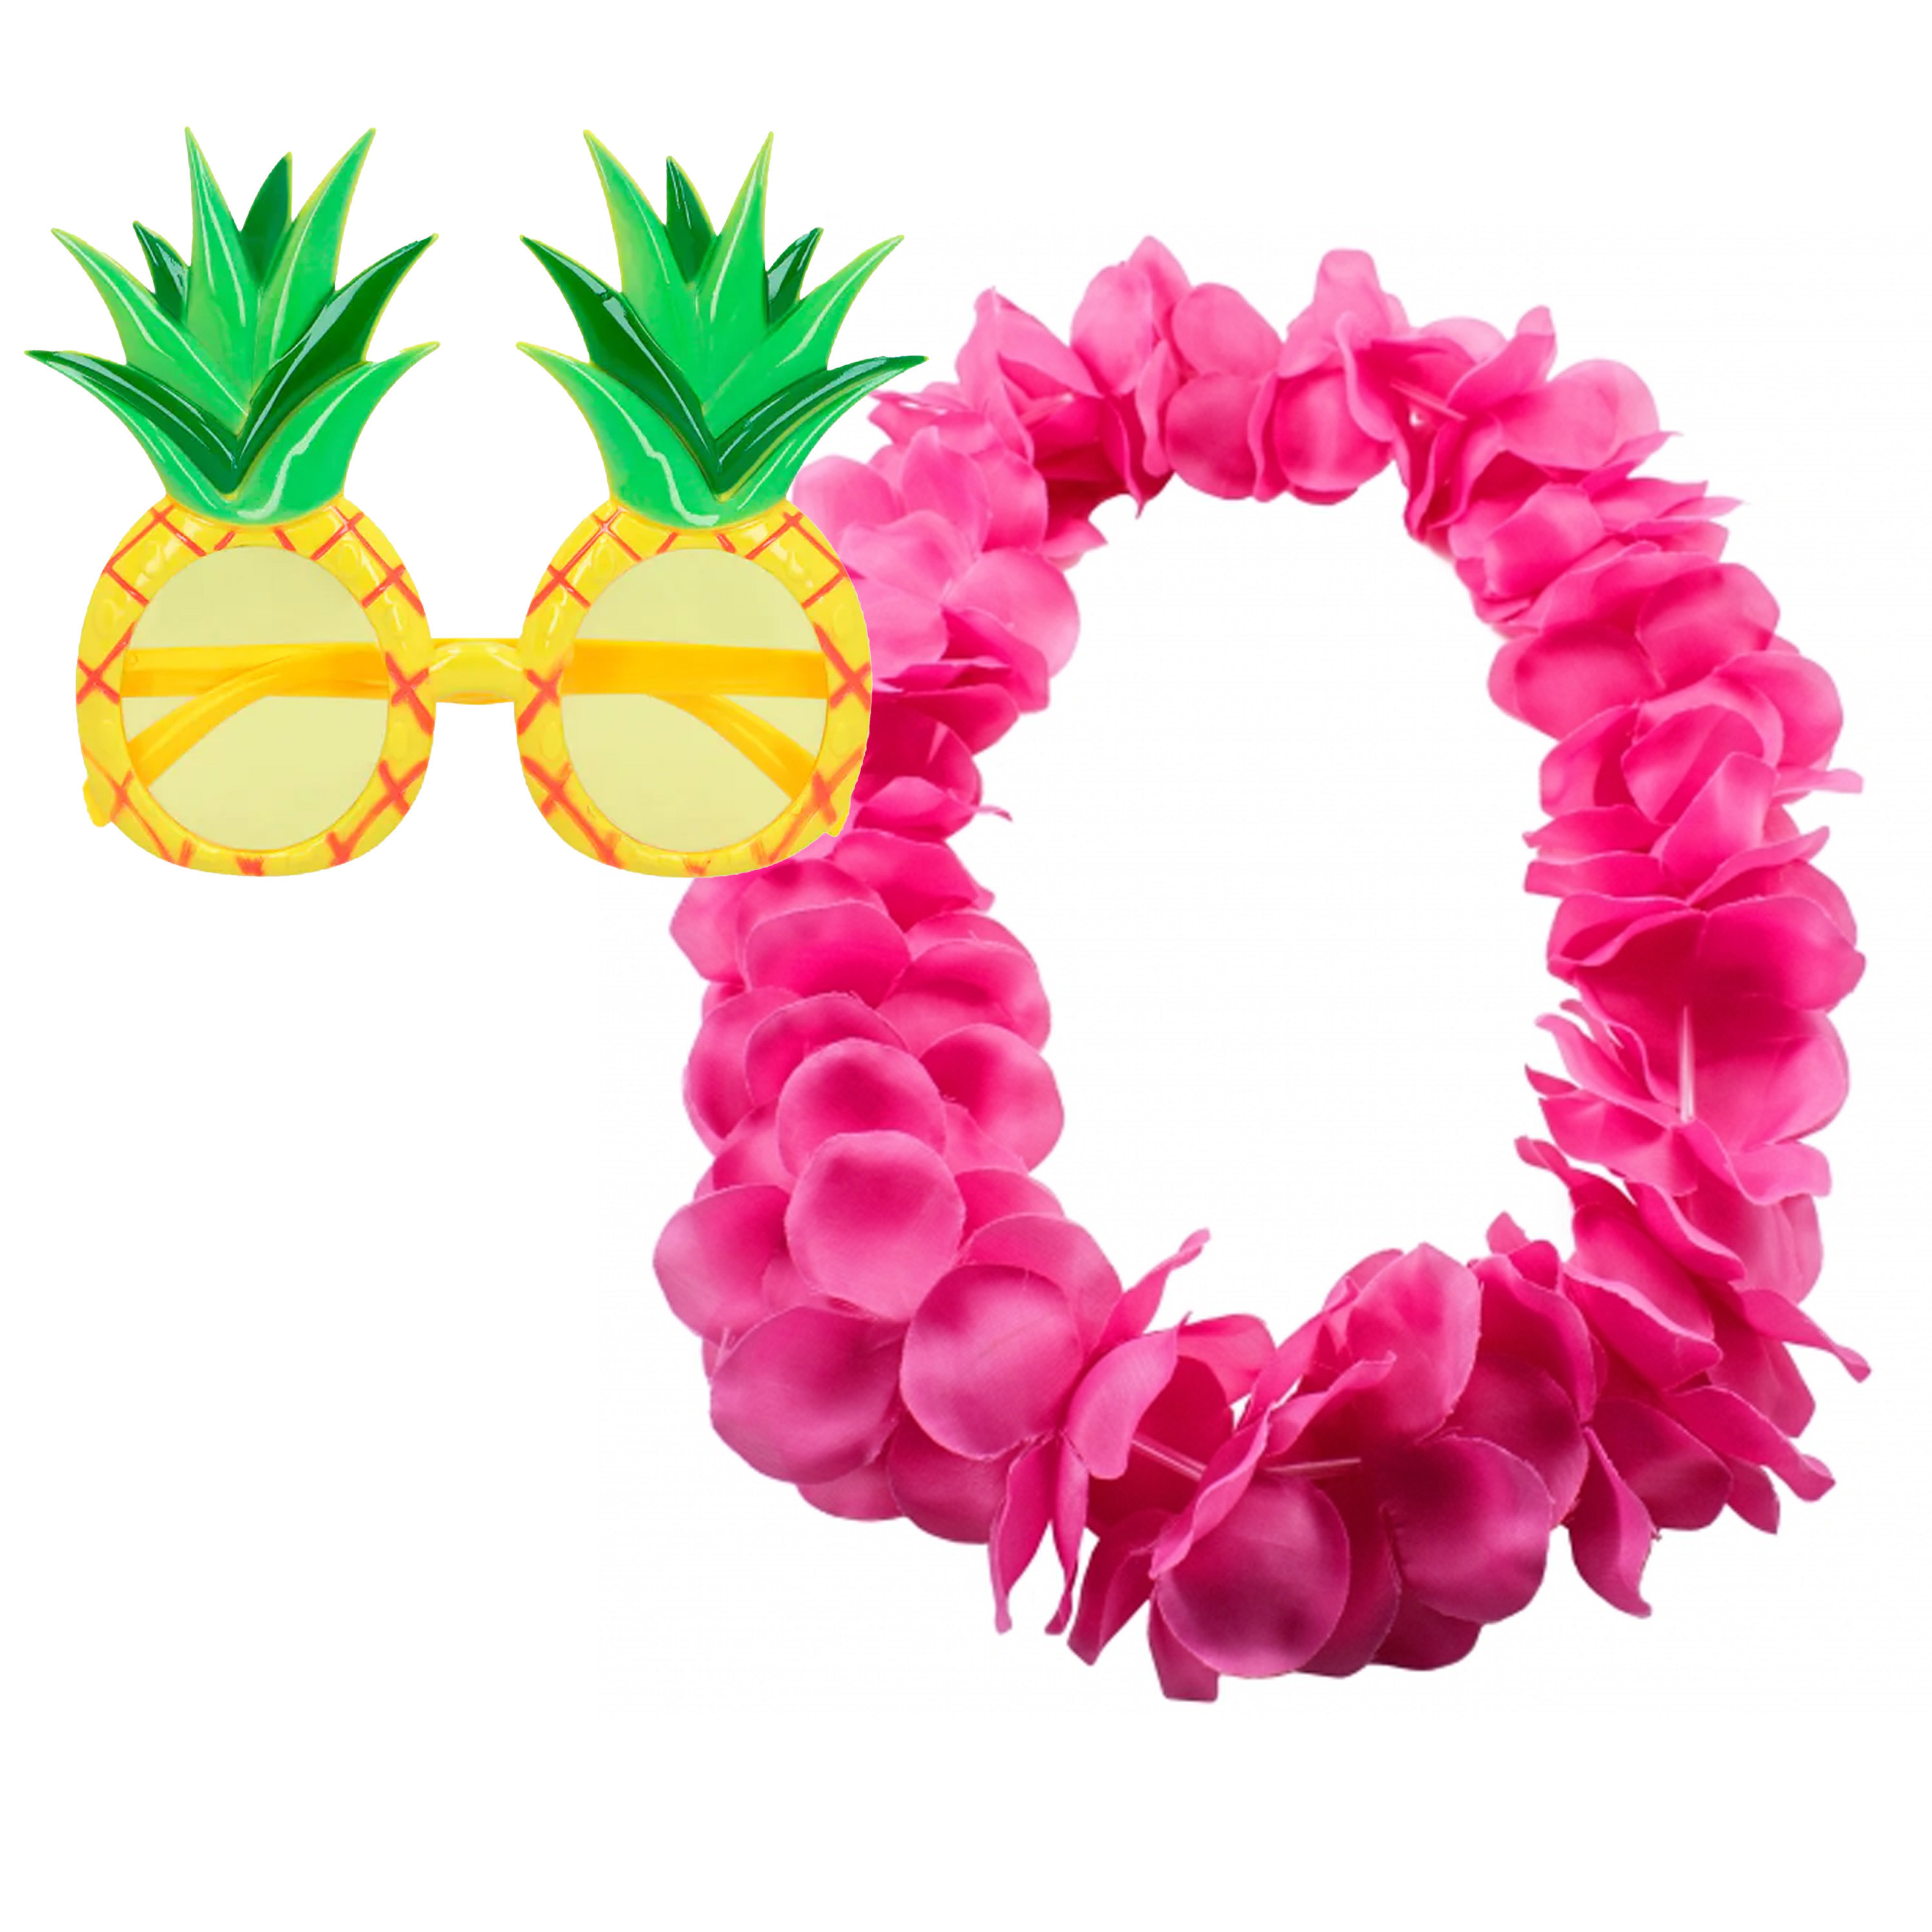 Tropische Hawaii party verkleed accessoires set - Ananas zonnebril - bloemenkrans fuchsia roze